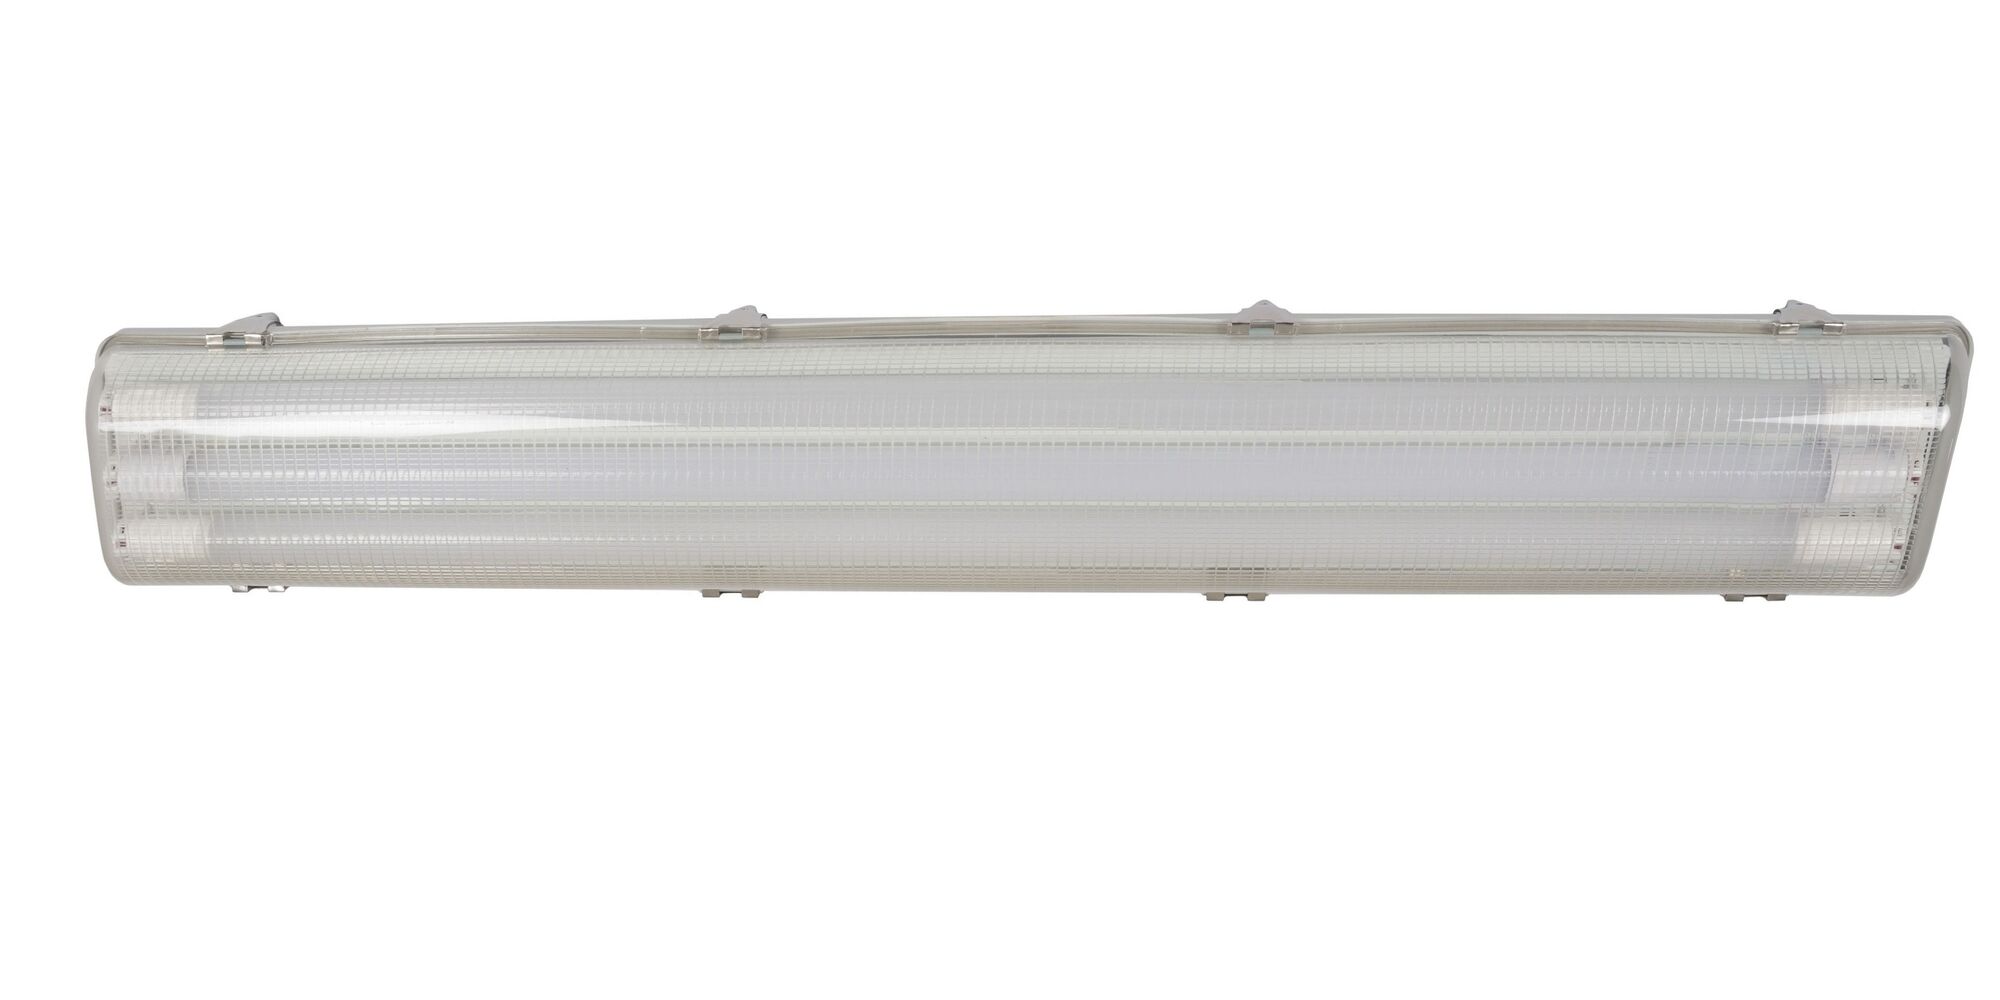 Светильник светодиодный GLERIO Line Free микропризма 36 Вт, 4584 лм, IP65, 4000 К